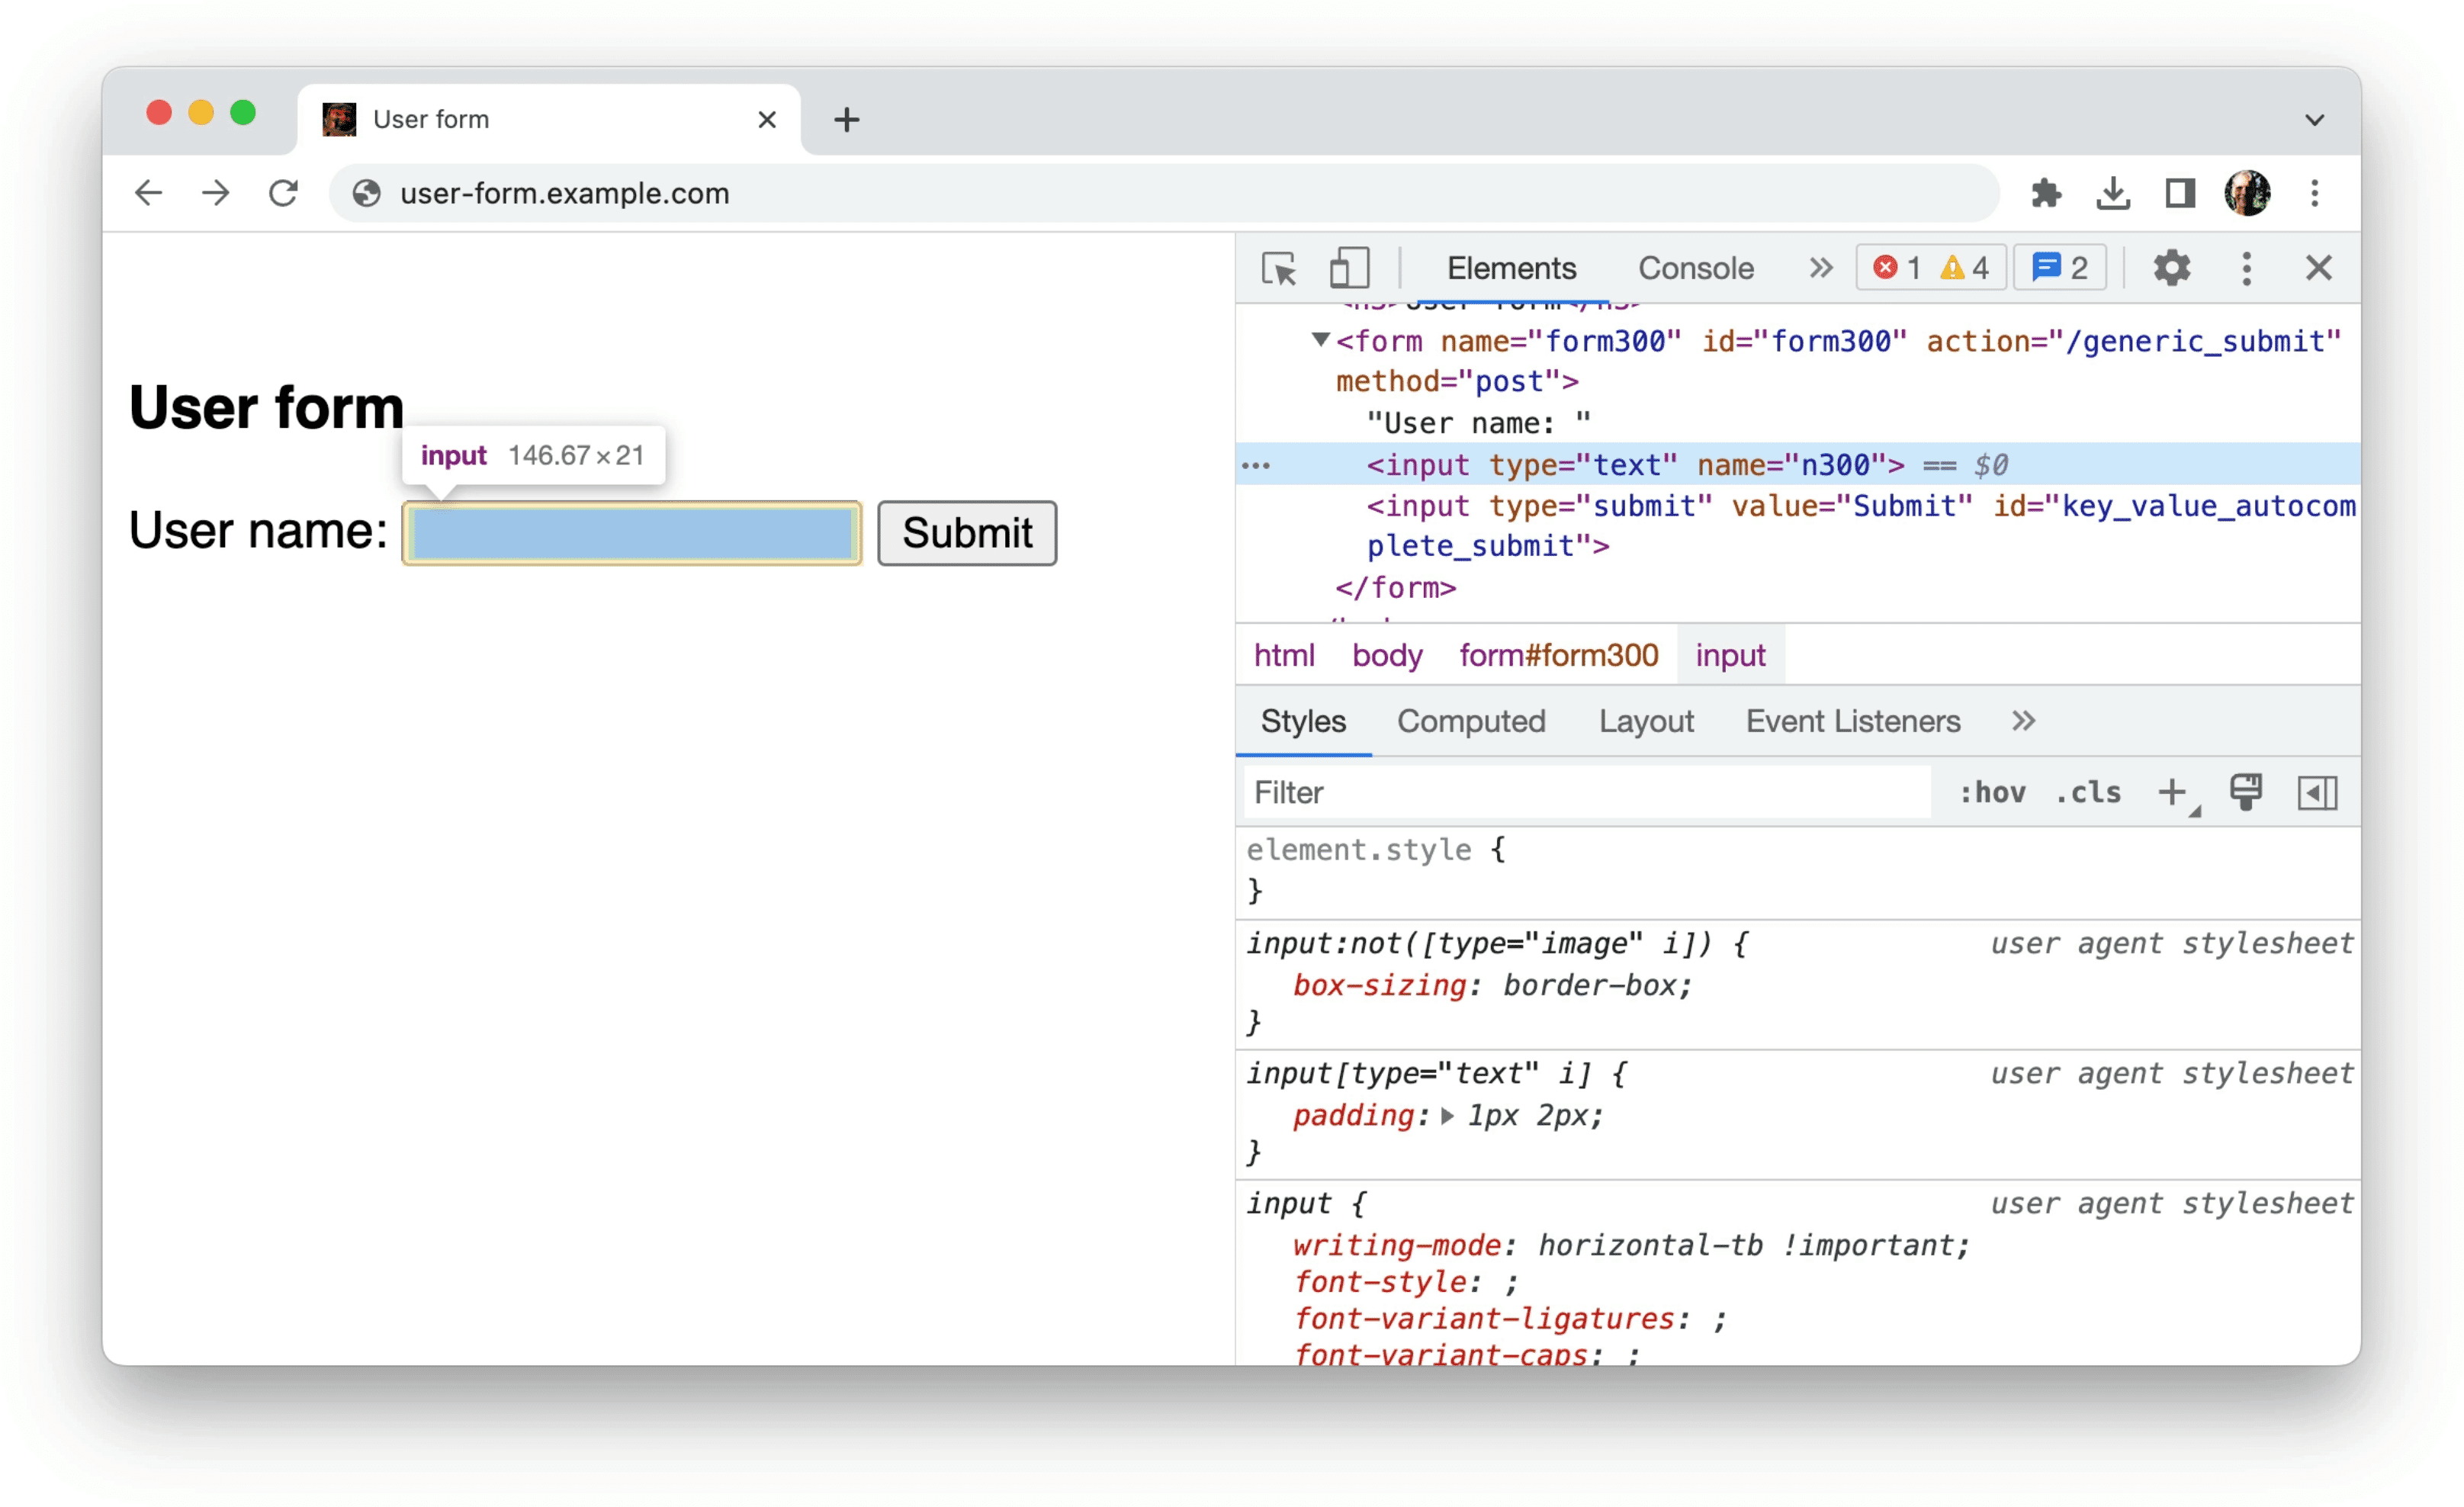 เครื่องมือสำหรับนักพัฒนาเว็บใน Chrome ที่แสดงข้อมูลเกี่ยวกับข้อมูลที่ไม่มีโครงสร้างในแบบฟอร์มดังที่แสดงในตัวอย่างก่อนหน้านี้ นั่นคืออินพุตเดียวที่มีเพียงแอตทริบิวต์ type=text และ name=n300